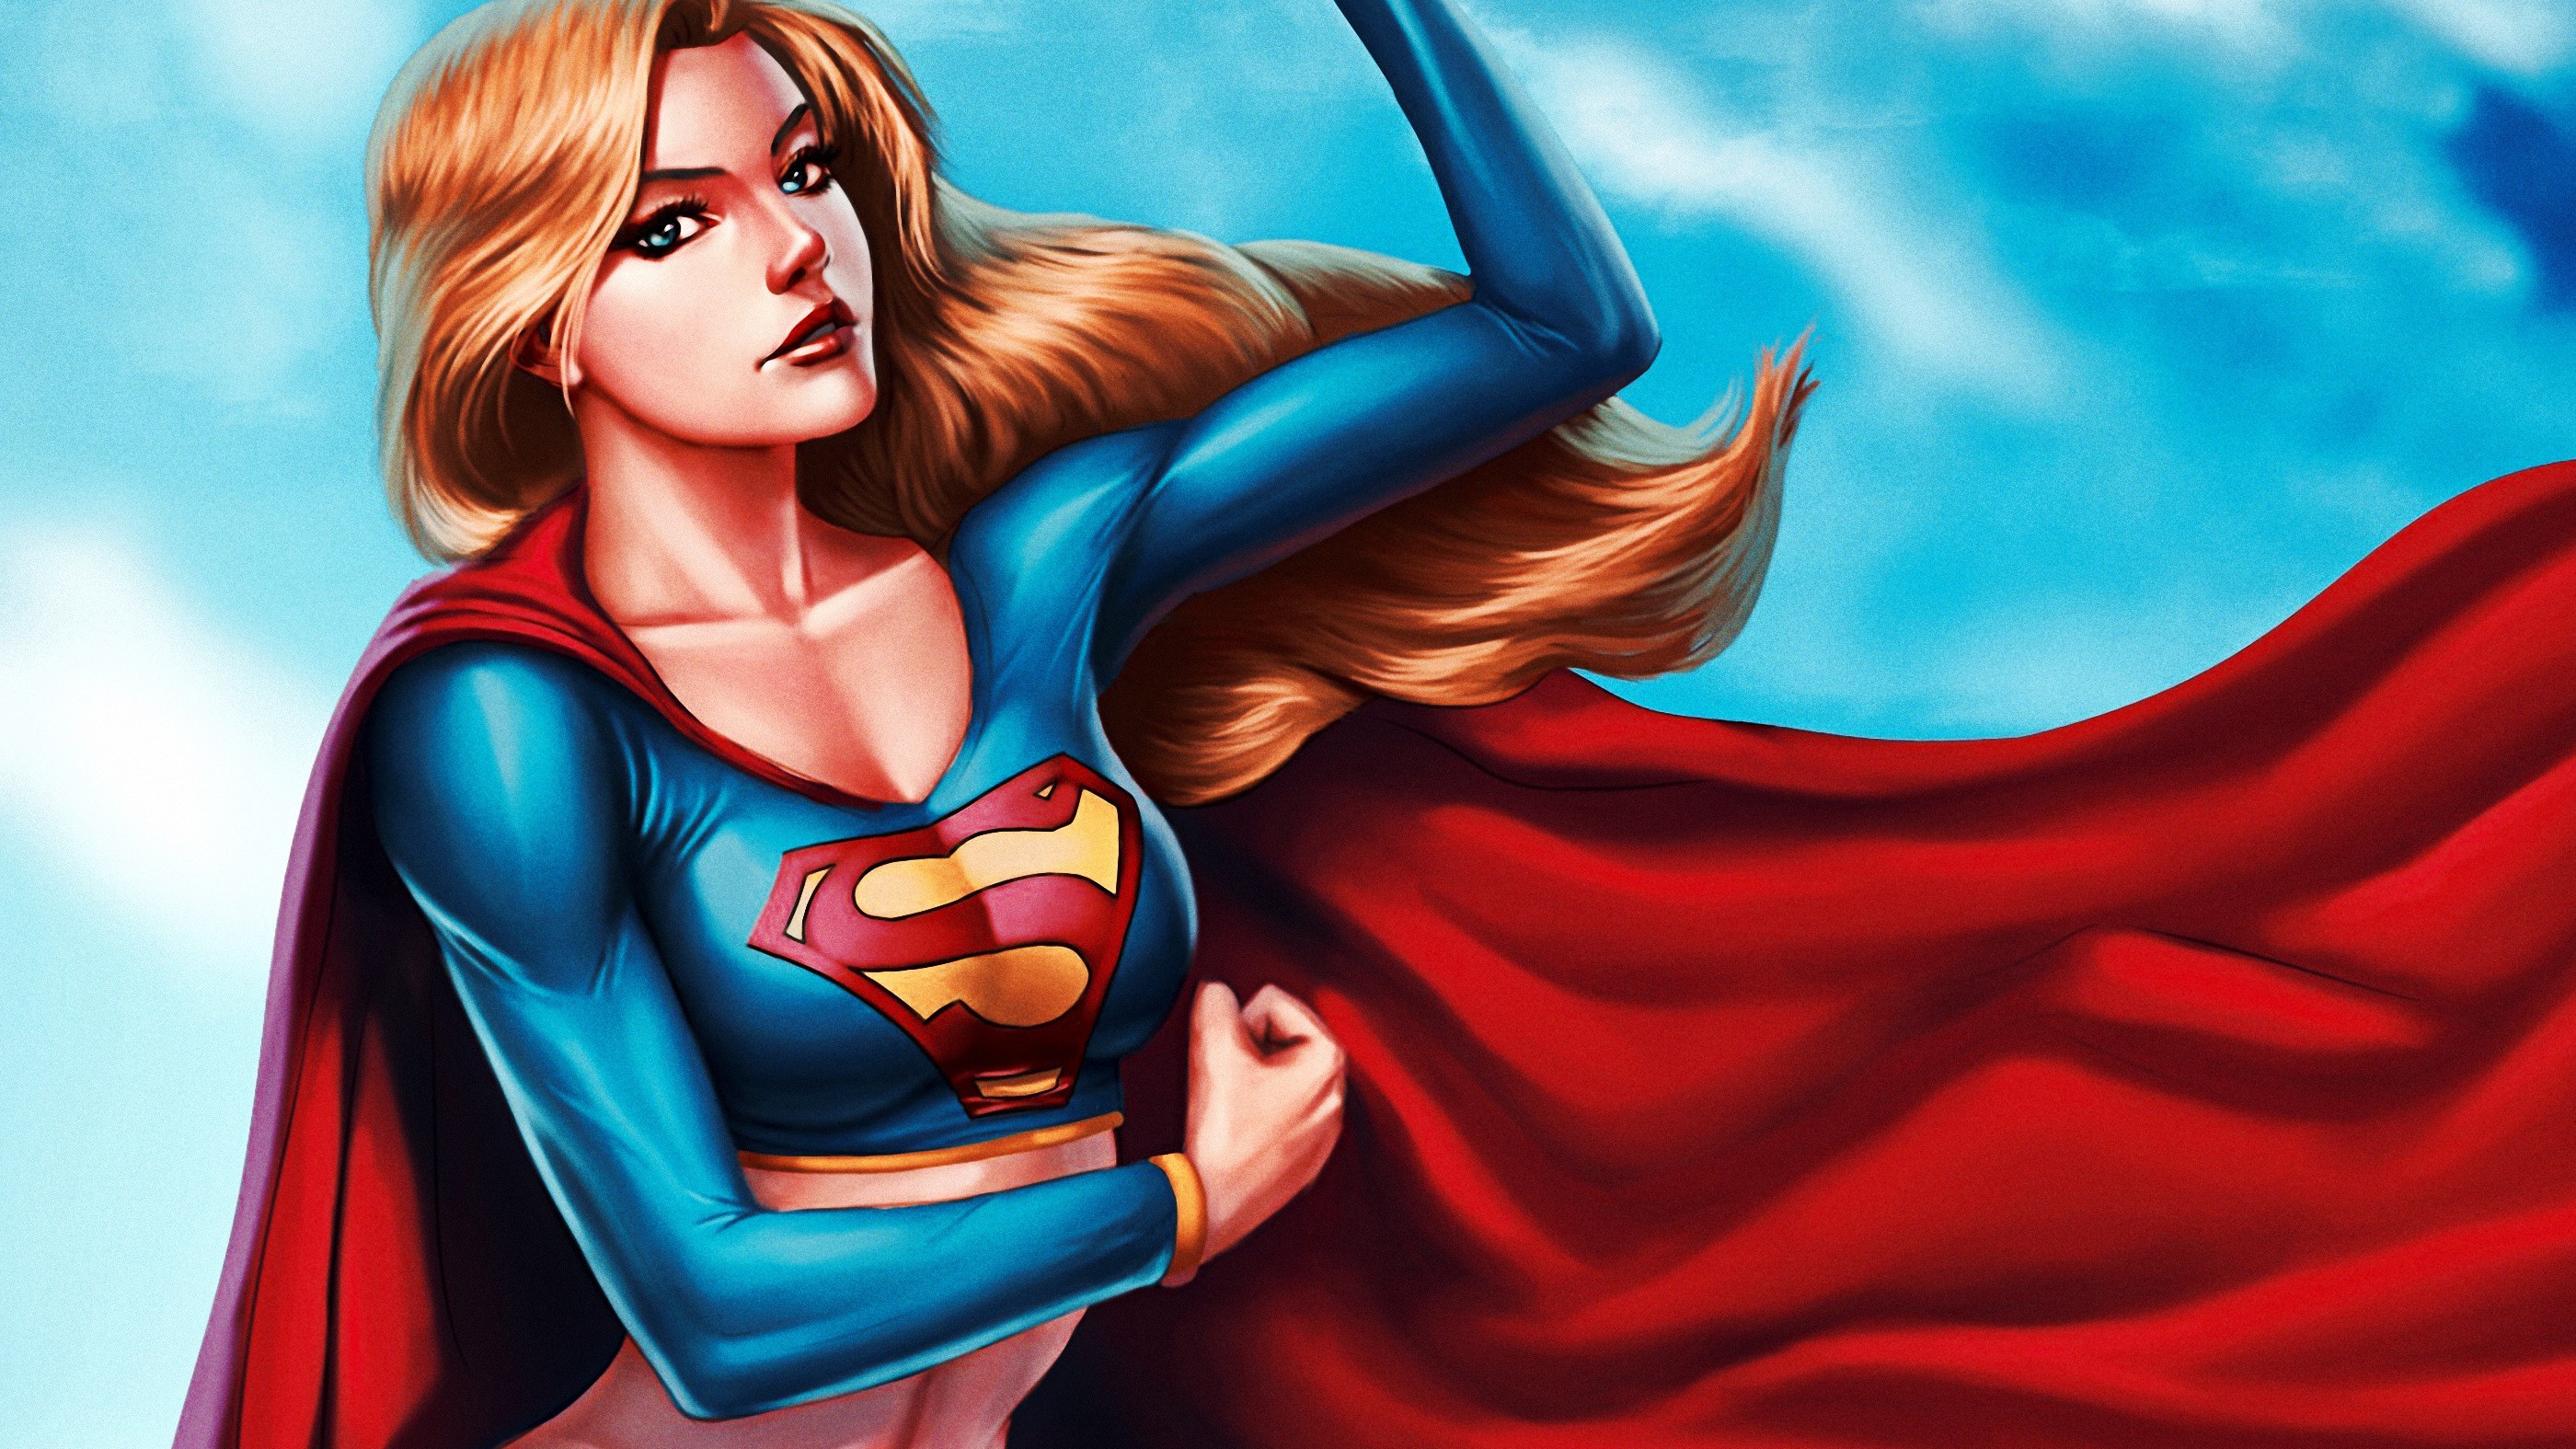 Women Superheroines Cape Long Hair Fantasy Girl Artwork Supergirl 2800x1575